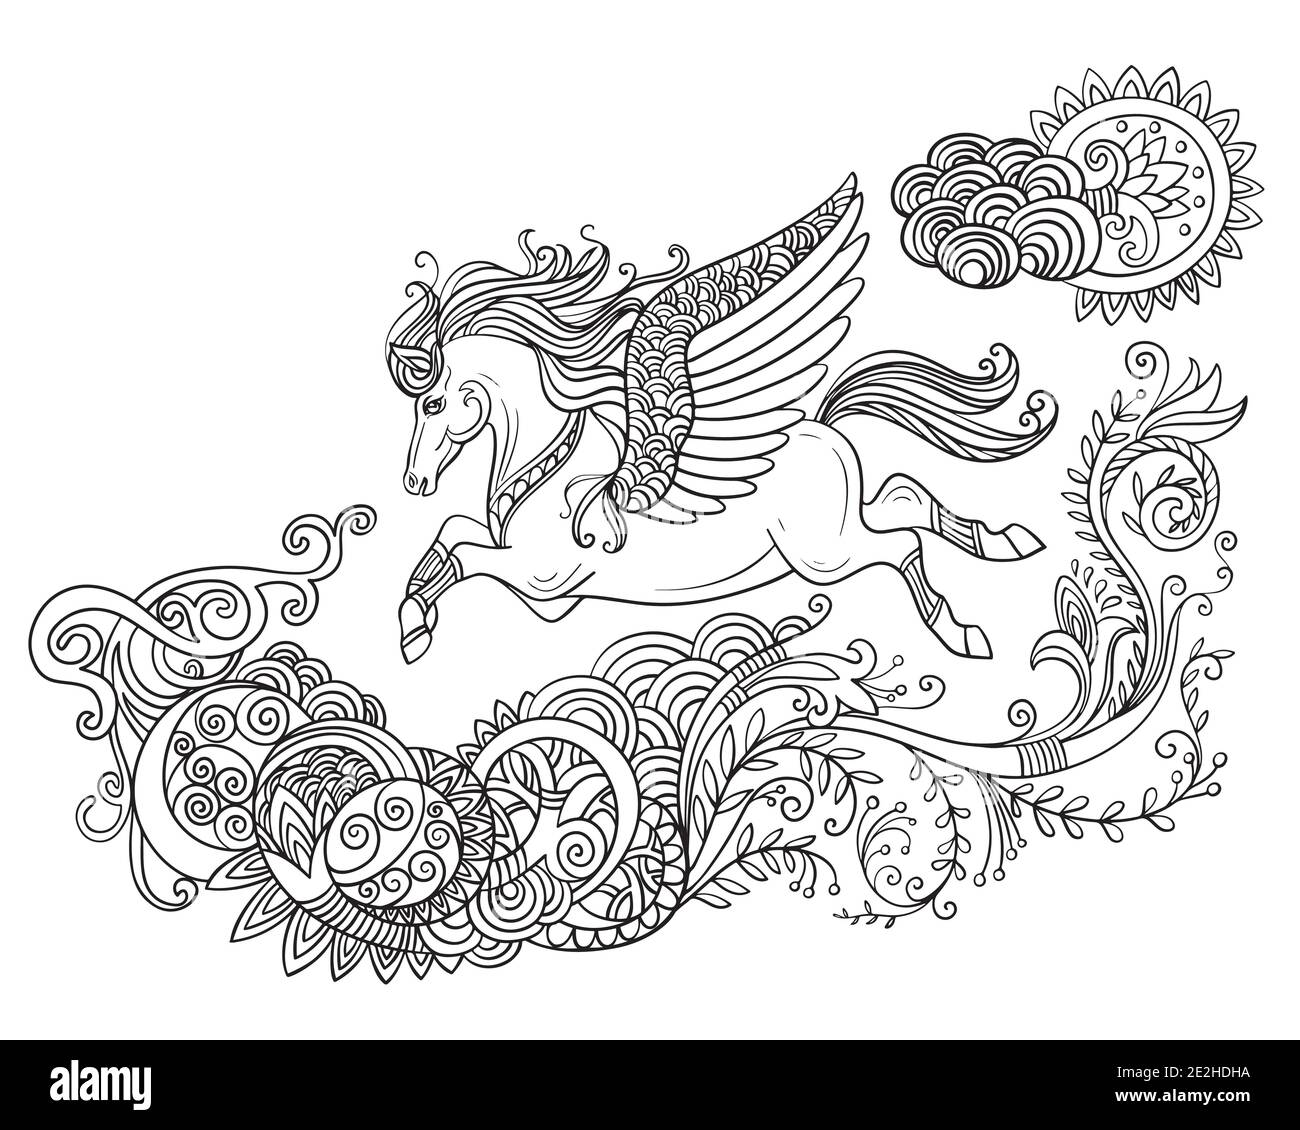 Disegno cavallo isolato con ali e manie lungo. Modello a groviglio per libro da colorare, tatuaggio, t-shirt, logo, segno. Illustrazione stilizzata di ho Illustrazione Vettoriale